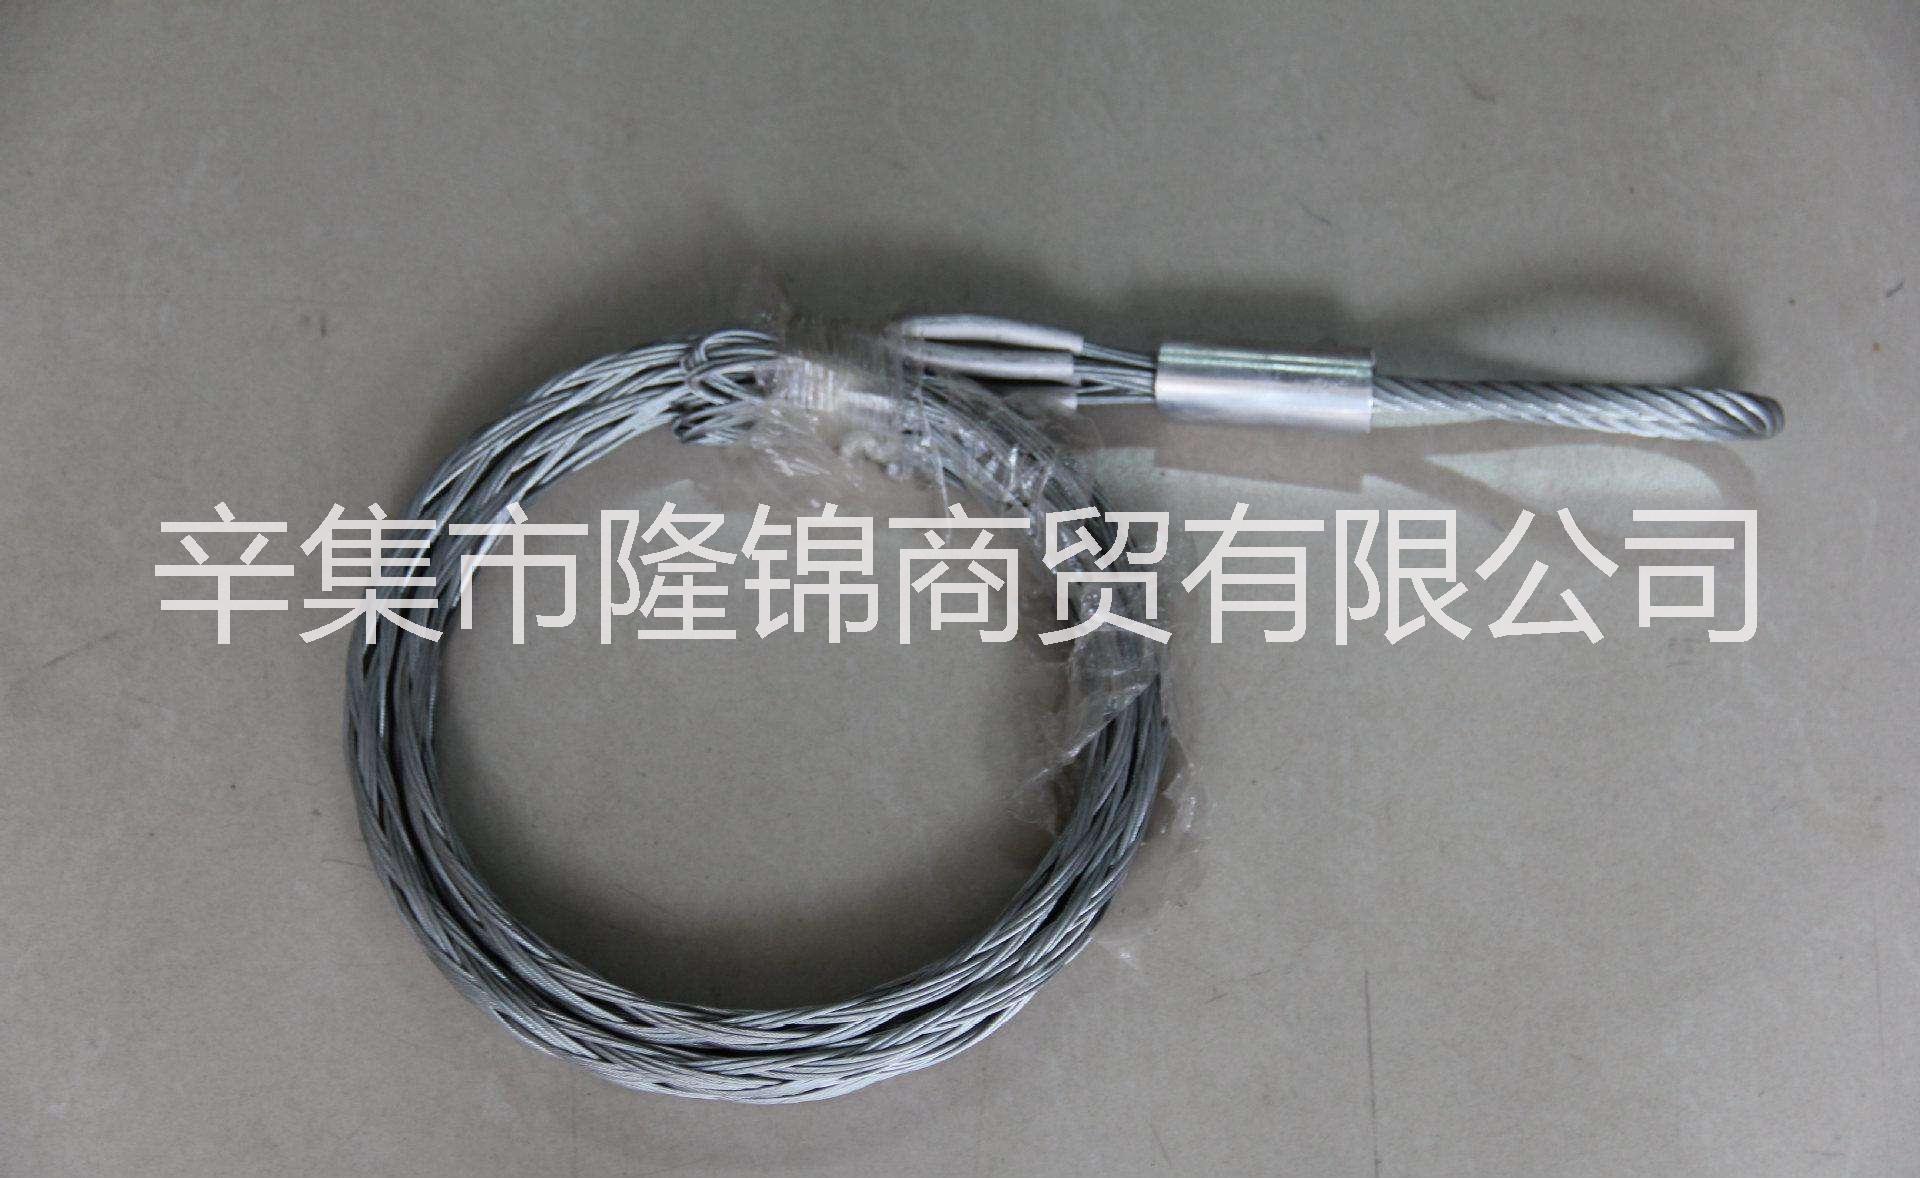 石家庄市电缆网套厂家左权电缆网套连接器型号 和顺电缆网套规格